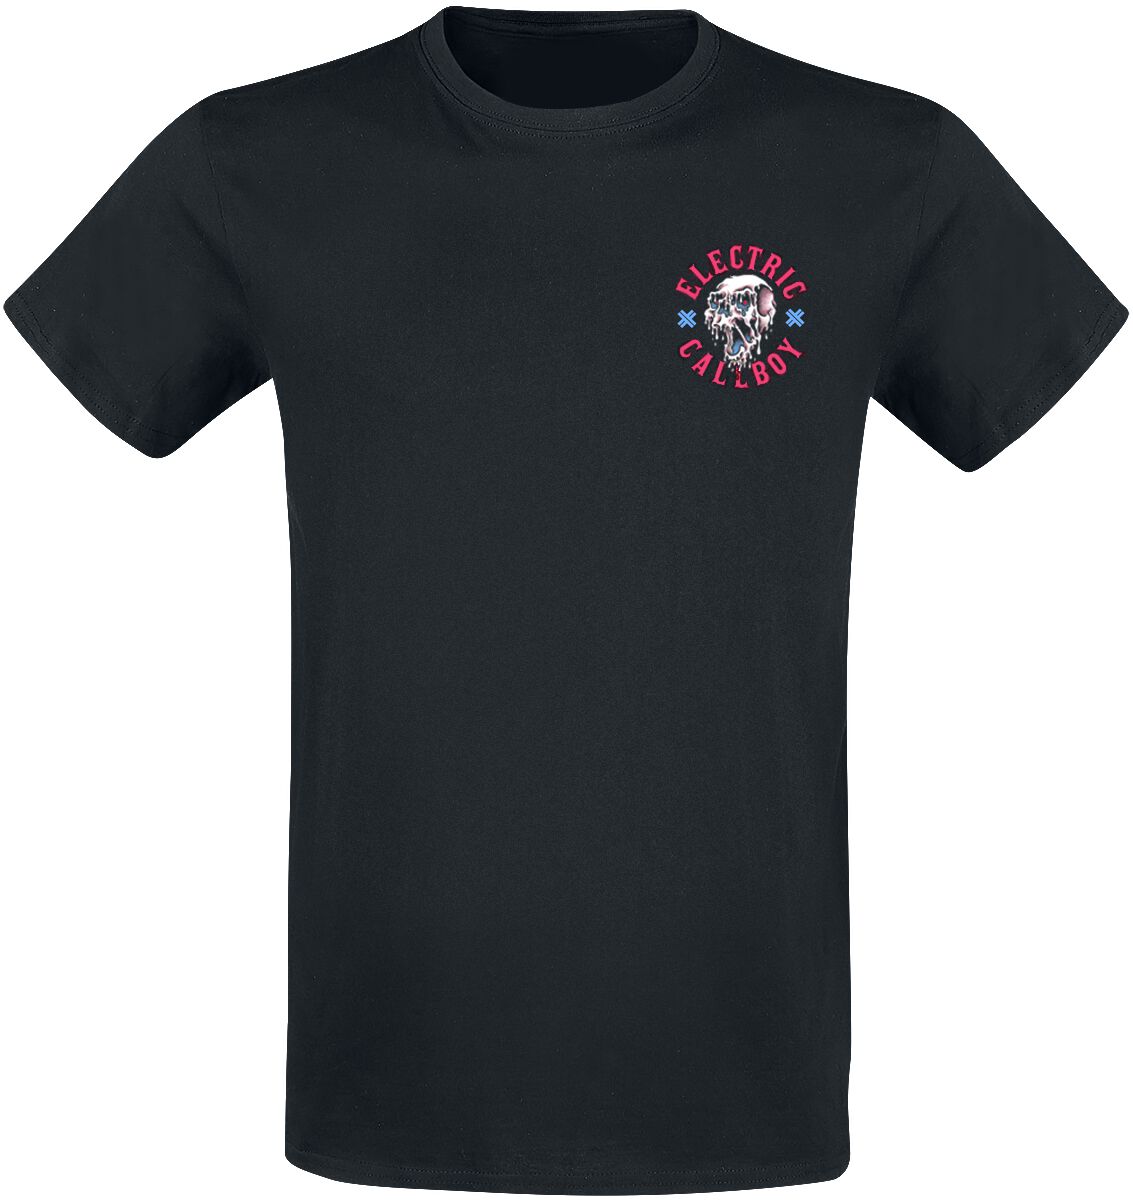 Electric Callboy T-Shirt - Let`s Do It Again - S bis 3XL - für Männer - Größe L - schwarz  - Lizenziertes Merchandise!